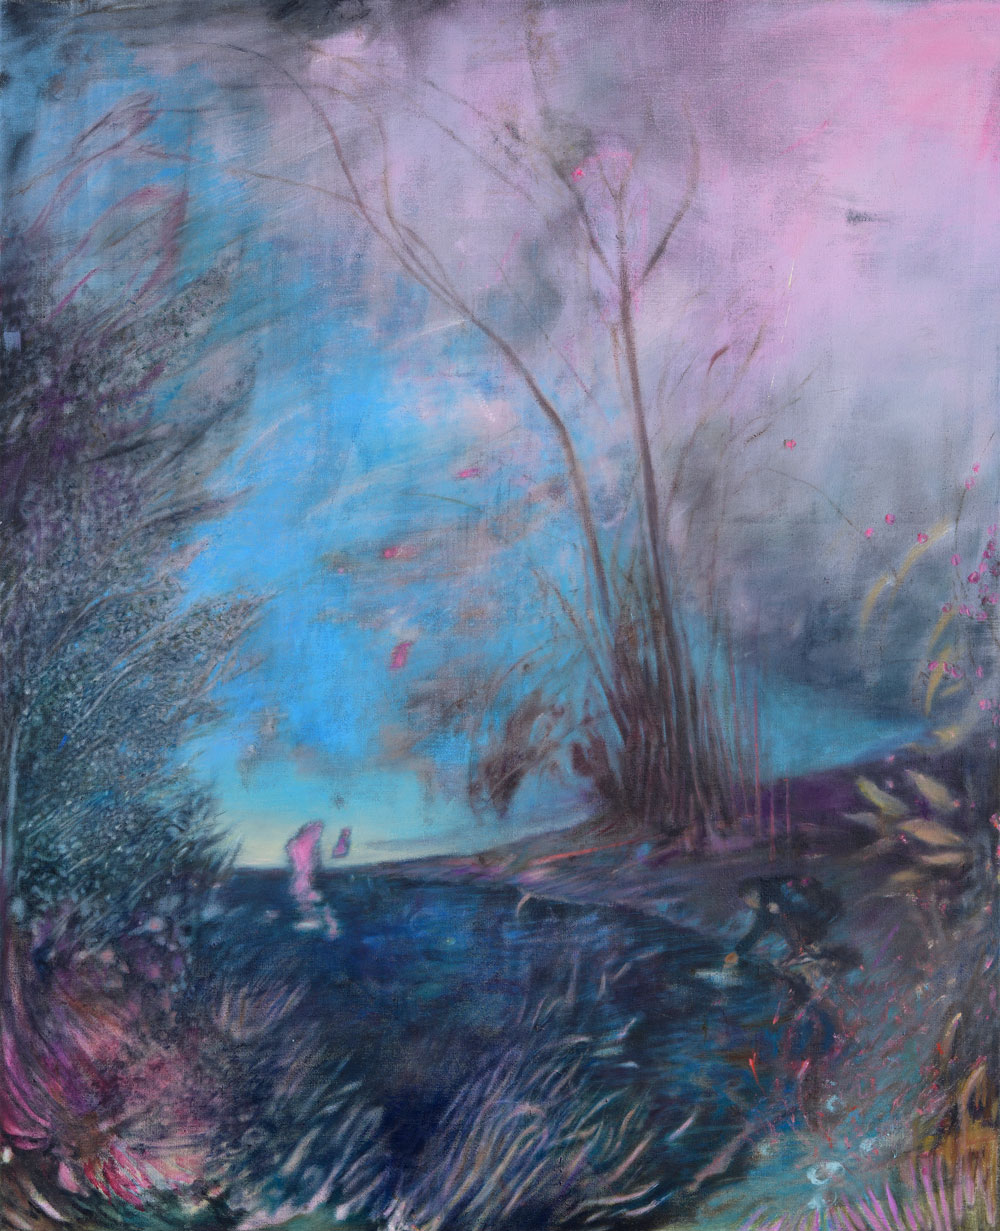 Windige Landschaft in blau rosa Tönen. ein Mann am See greift ins Wasser.